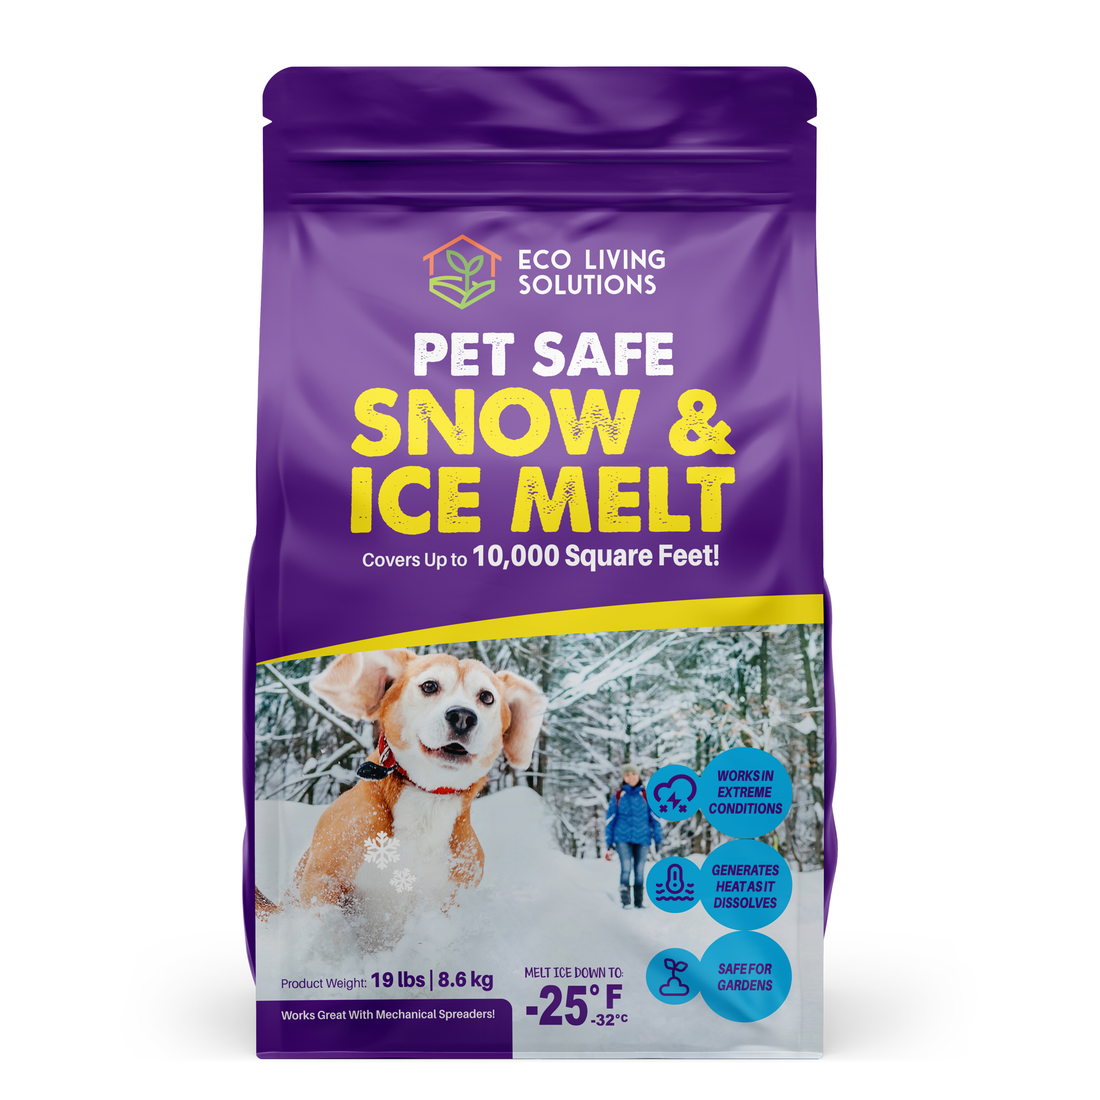 Snow Salt Near Me - Options for Snow and Ice Melt